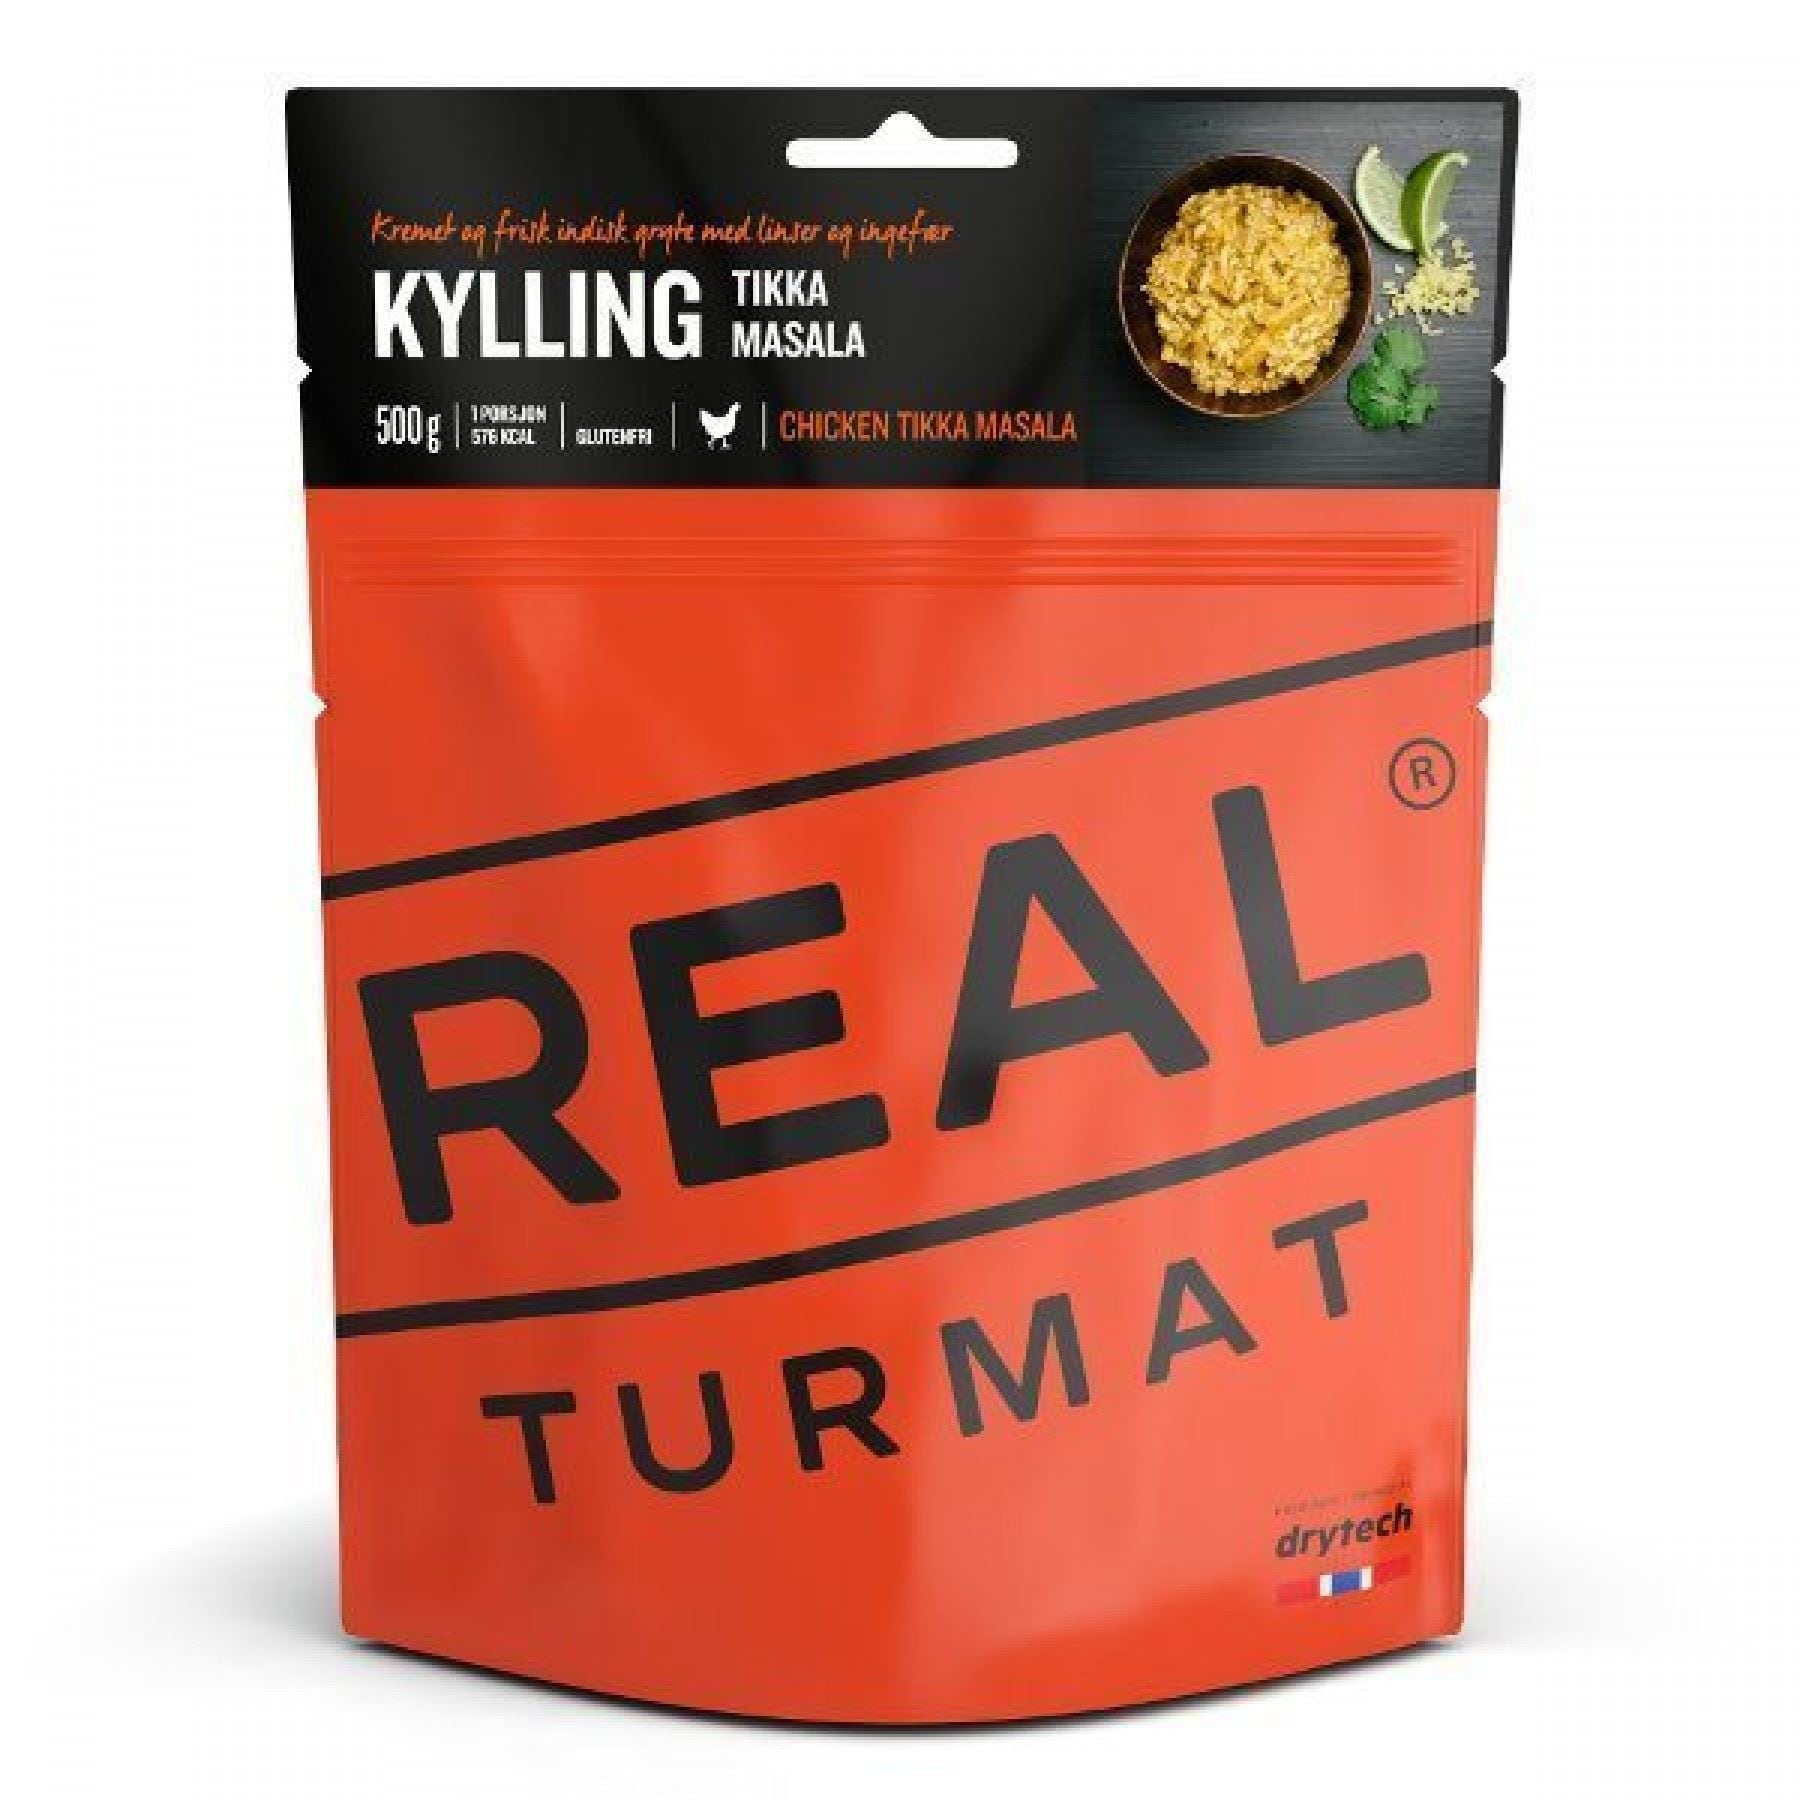 REAL TURMAT Kylling tikka masala 500 gr